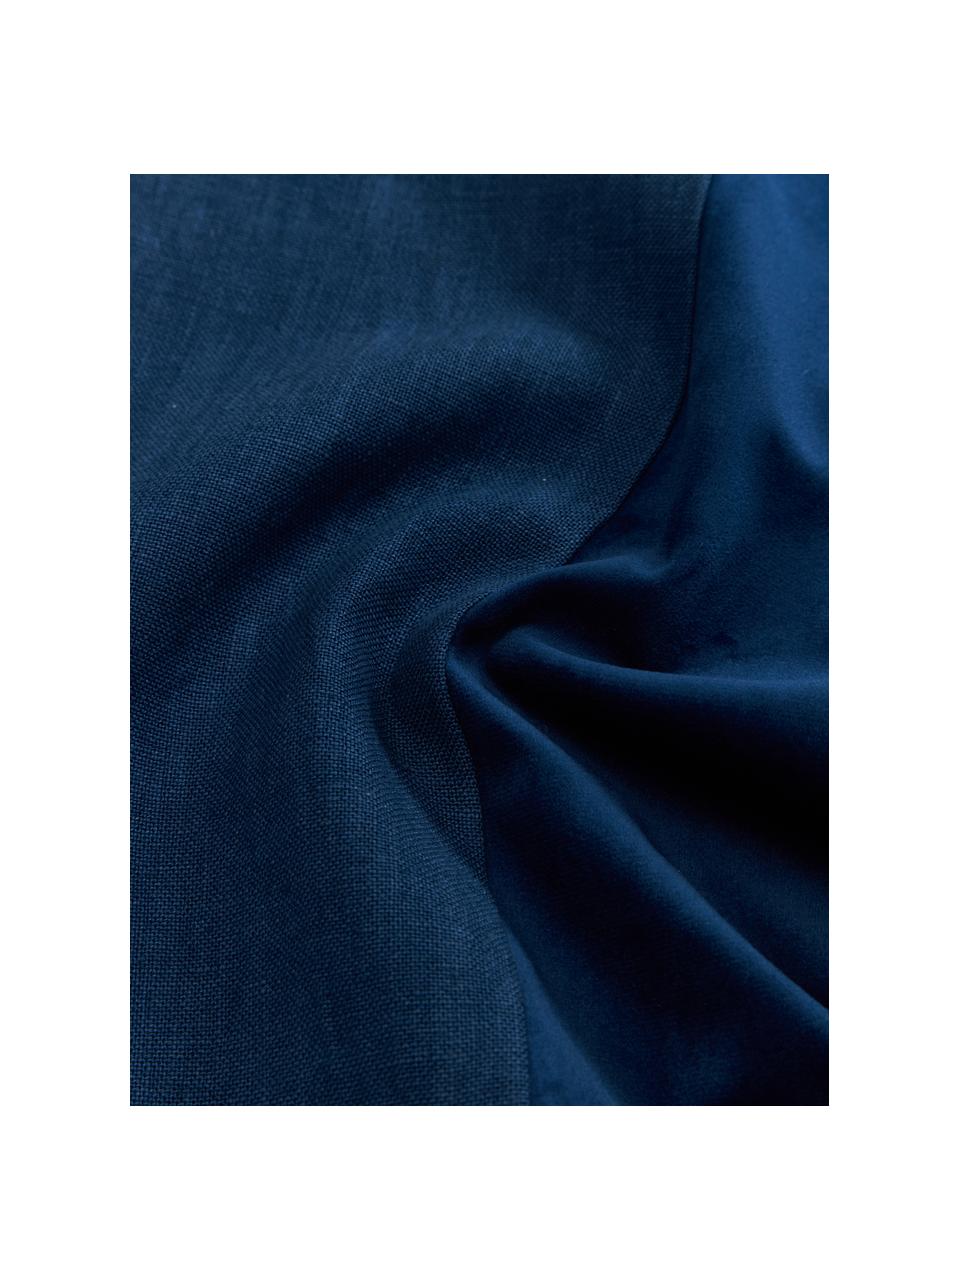 Kussenhoes Adelaide van fluweel/linnen in donkerblauw, Donkerblauw, B 40 x L 40 cm